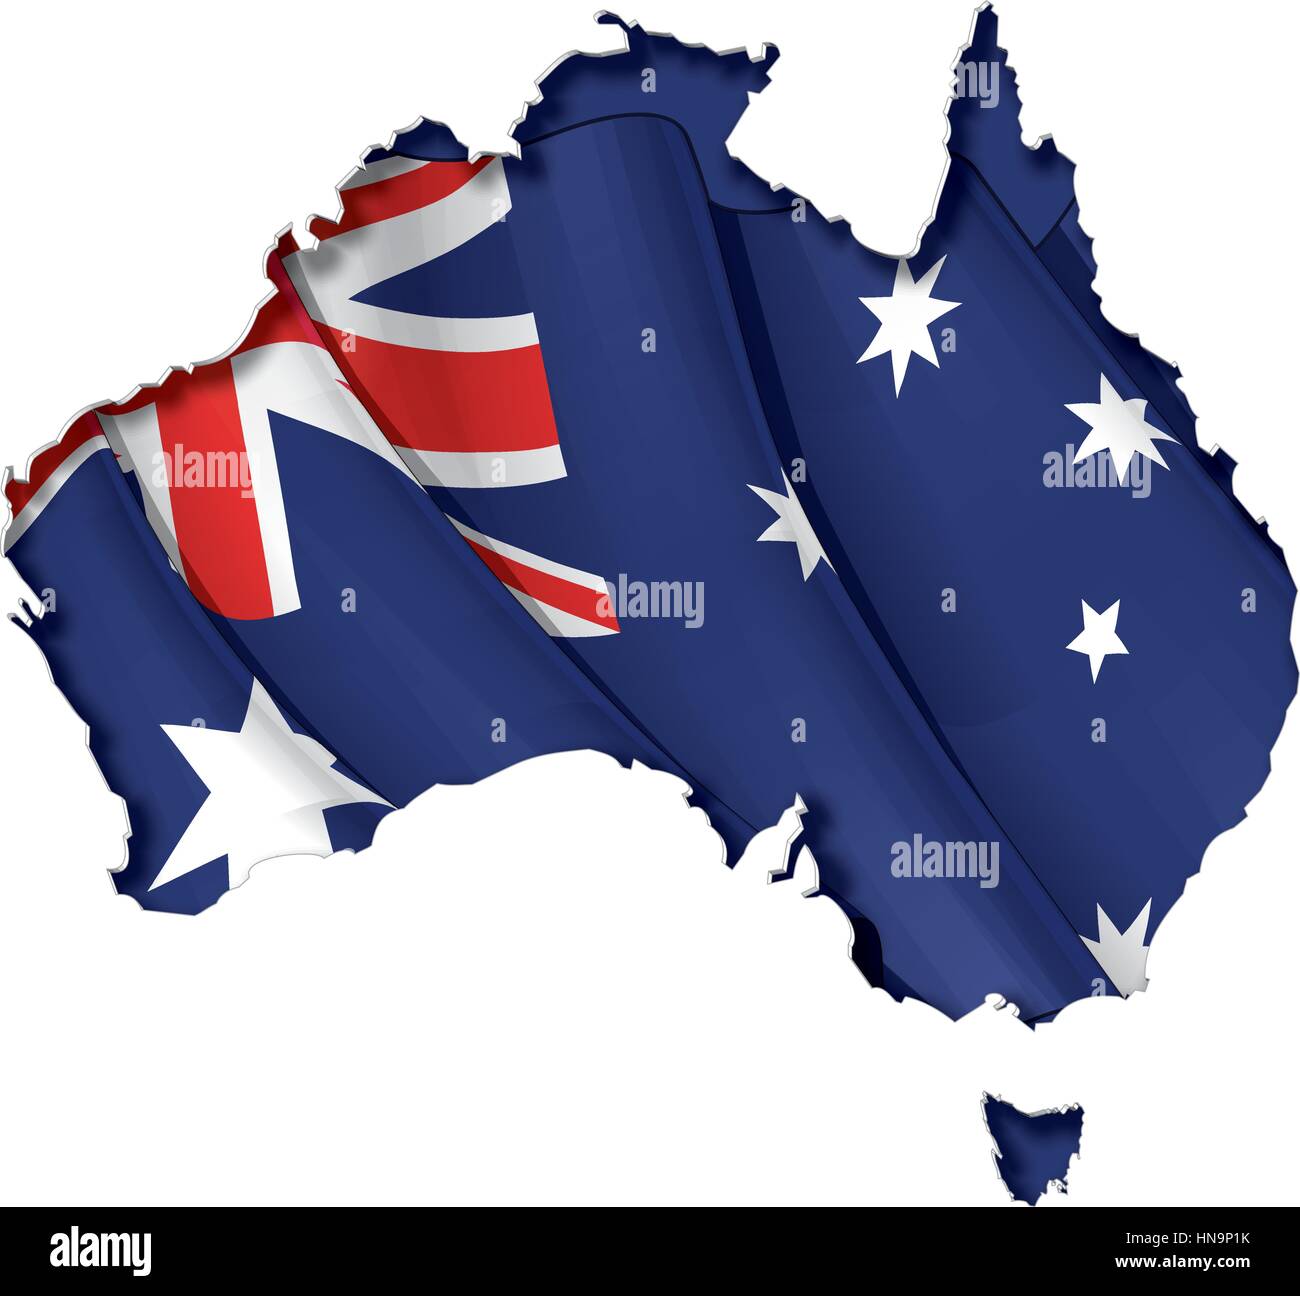 Mappa australiana cut-out, altamente dettagliate sul bordo di ombreggiatura, con un sventolando bandiere al di sotto. Il Settle spessore del taglio-fuori confine segue il Illustrazione Vettoriale